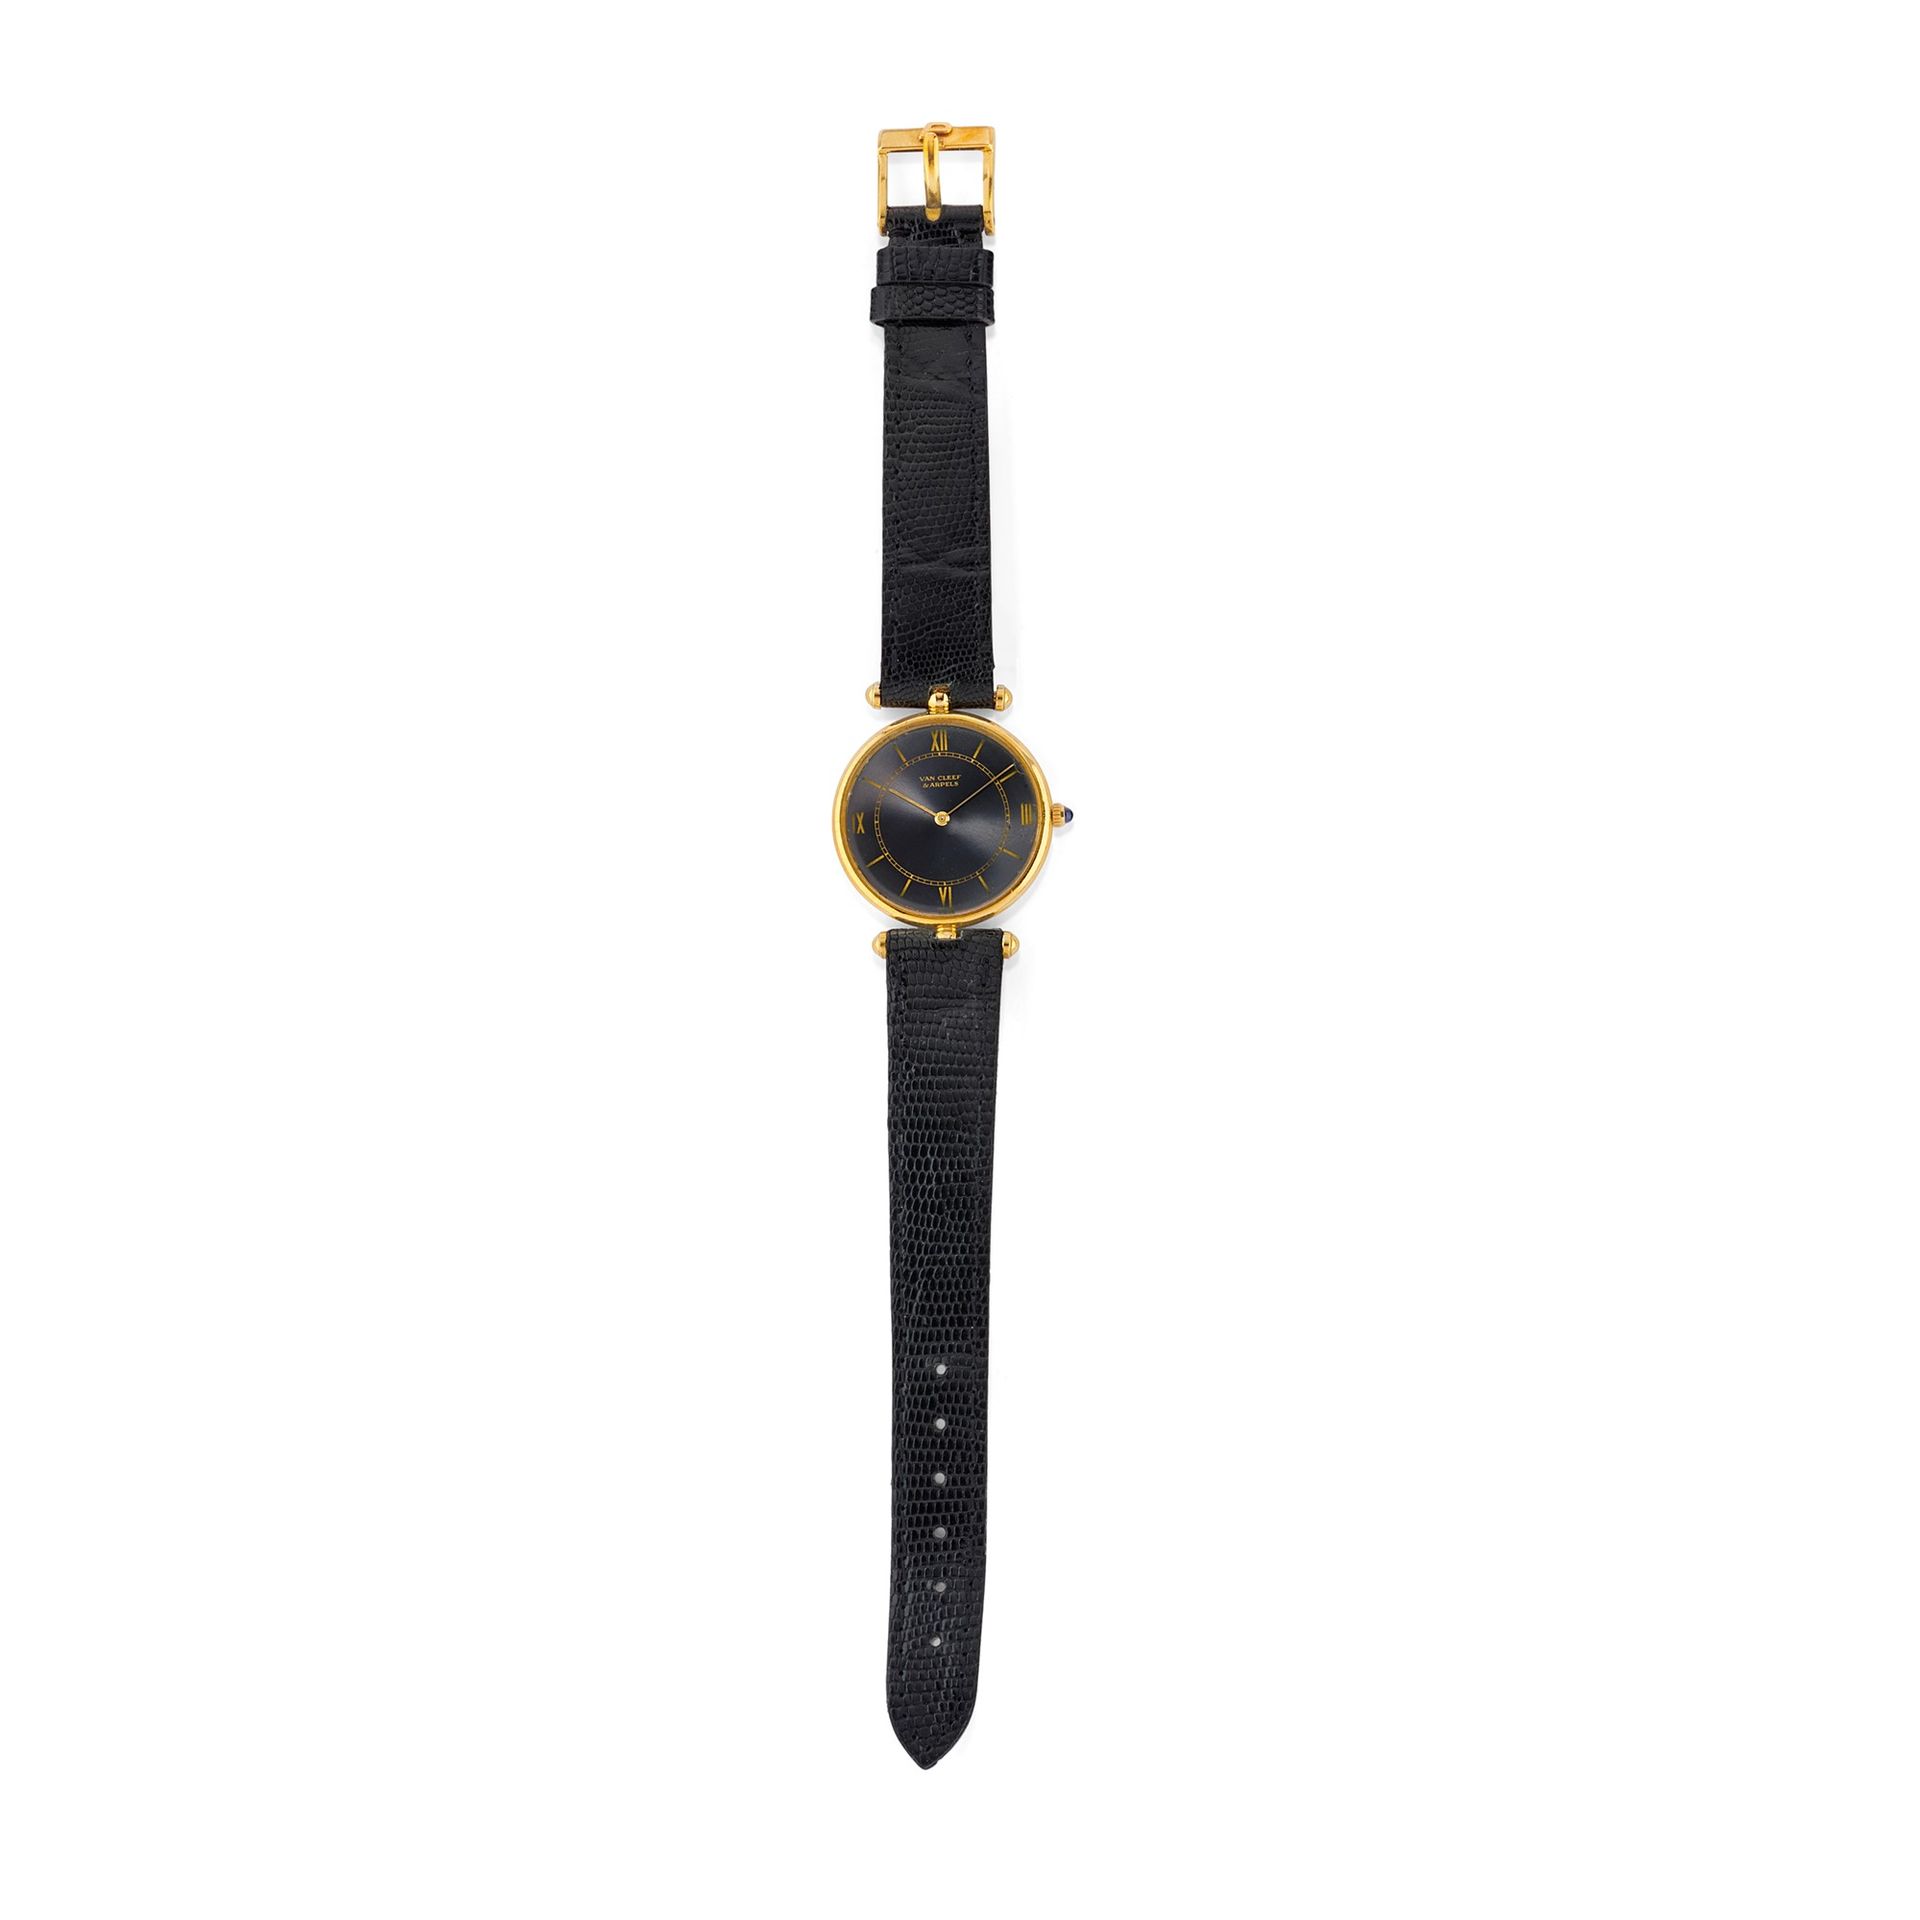 VAN CLEEF & ARPELS Montre-bracelet en or jaune 18 carats, Van Cleef & Arpels


P&hellip;